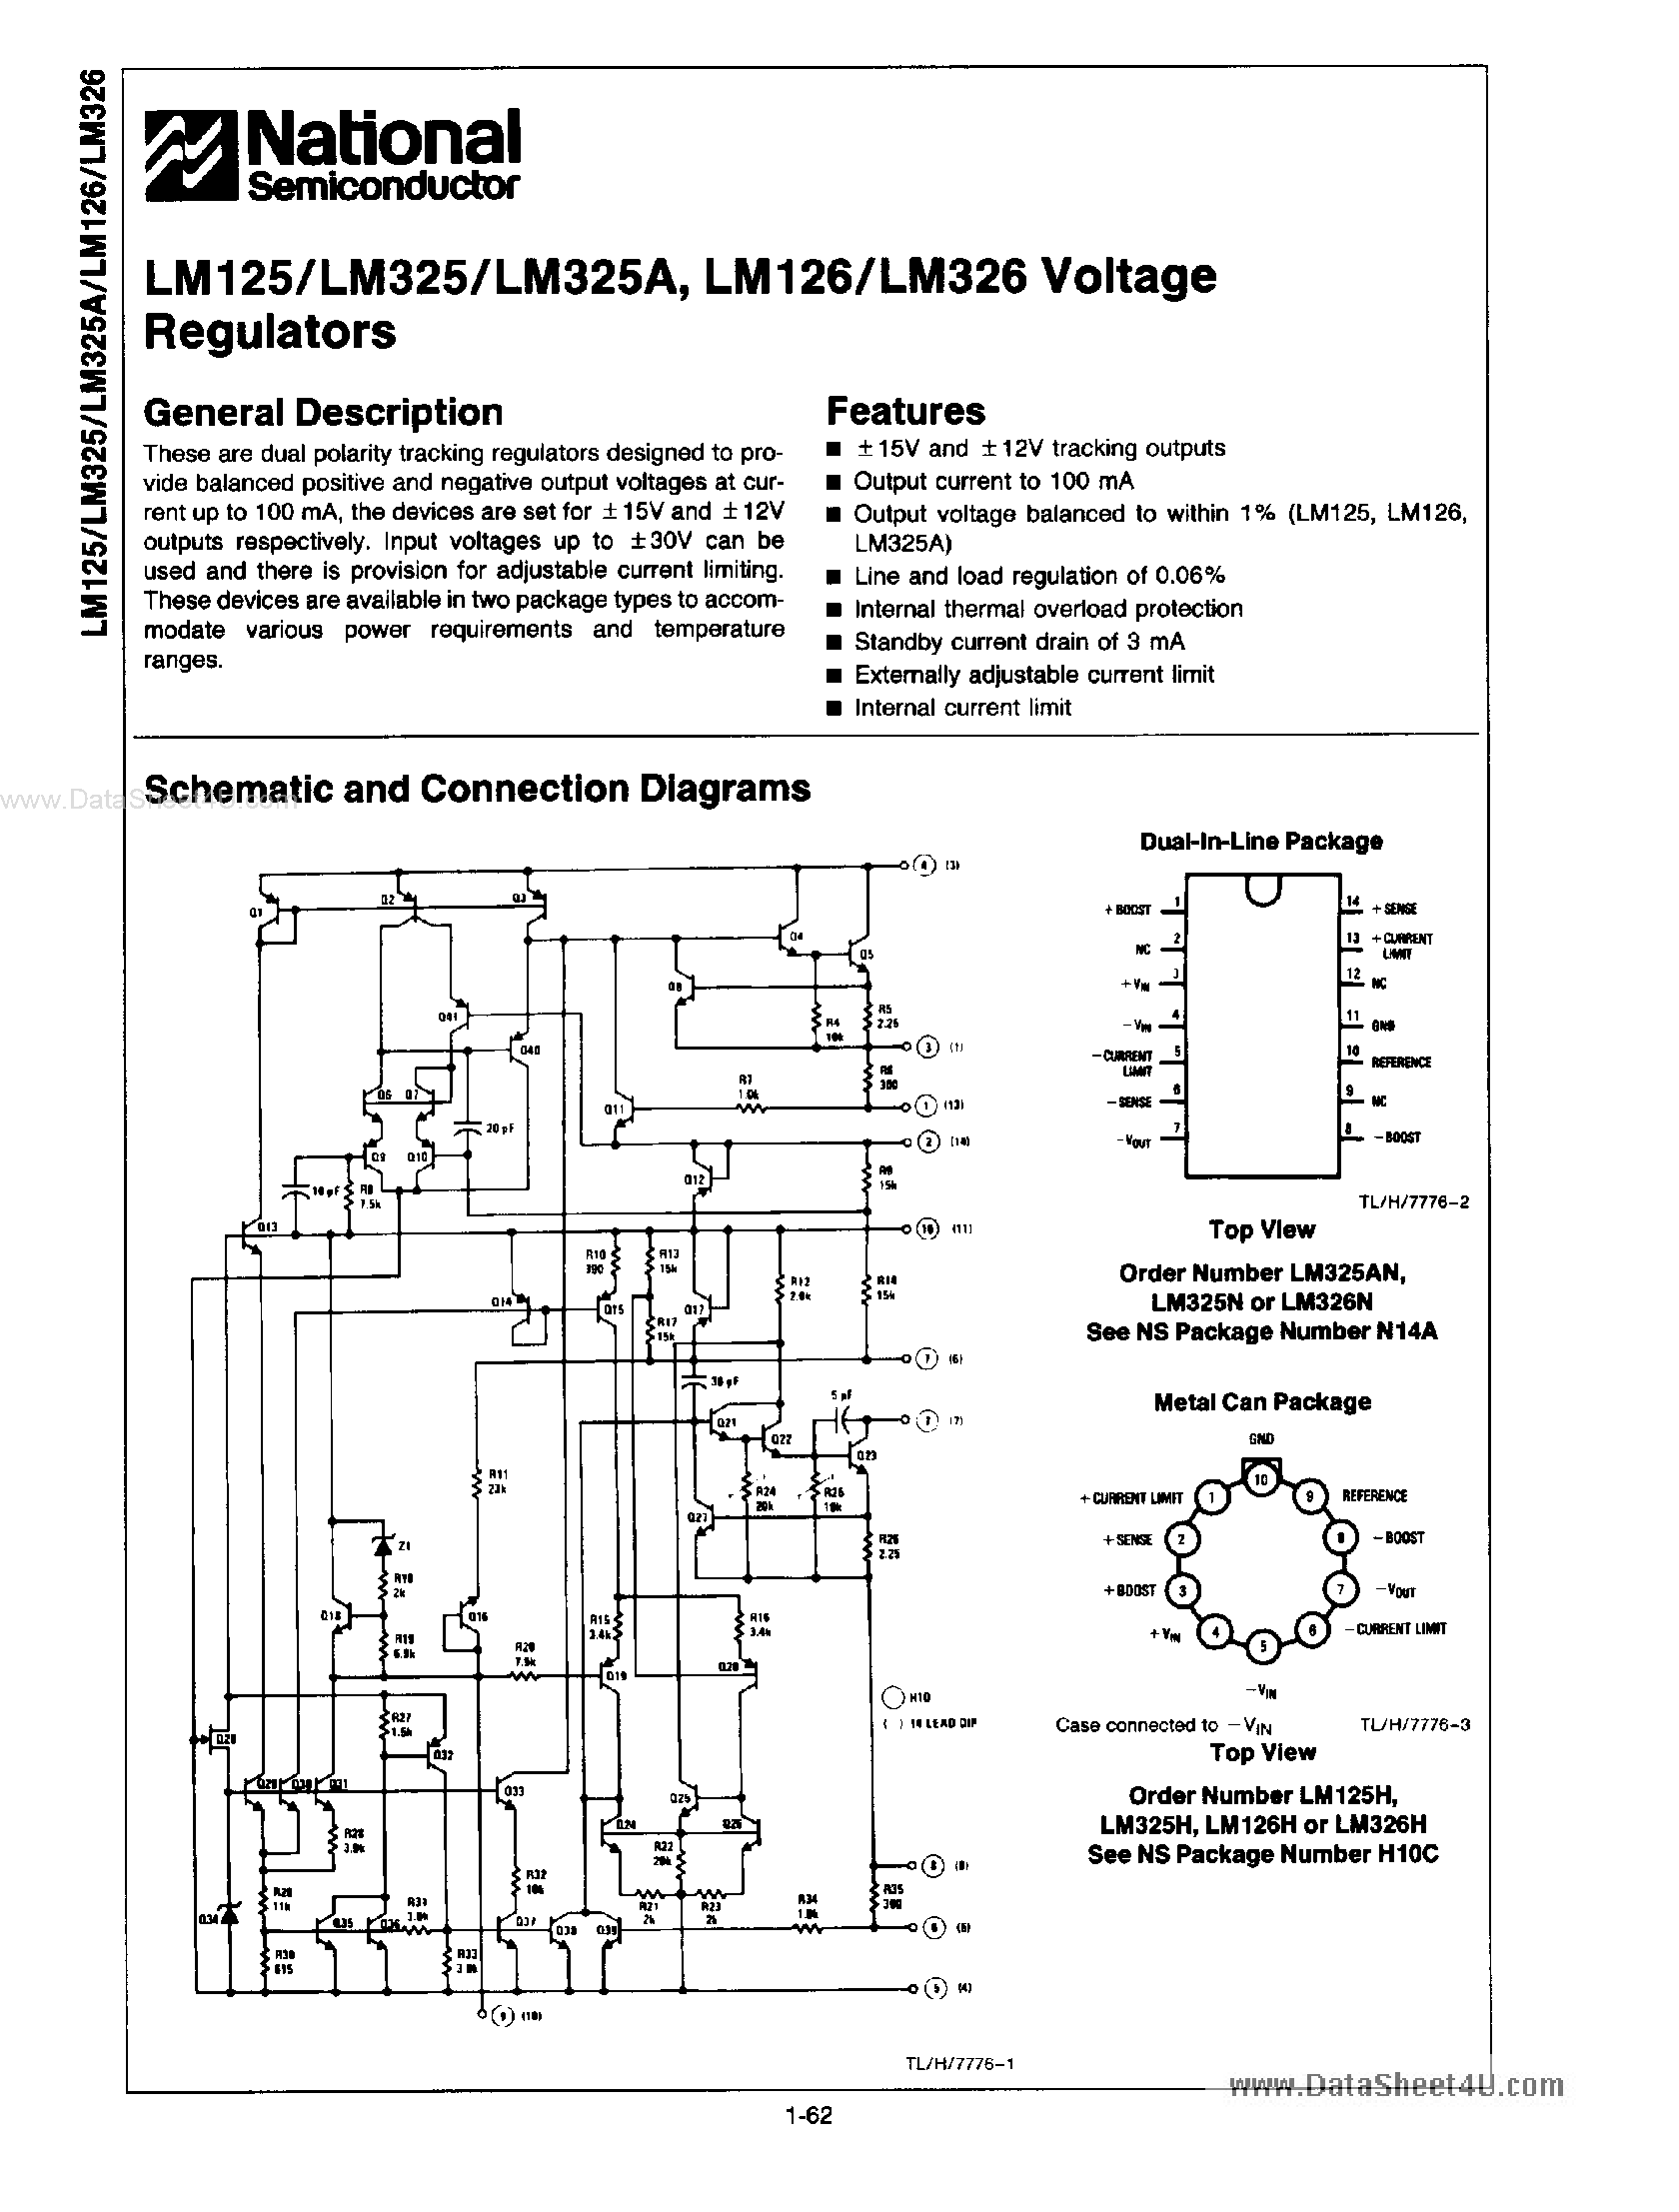 Даташит LM125 - (LM125 / LM126) VOLTAGE REGULATORS страница 1